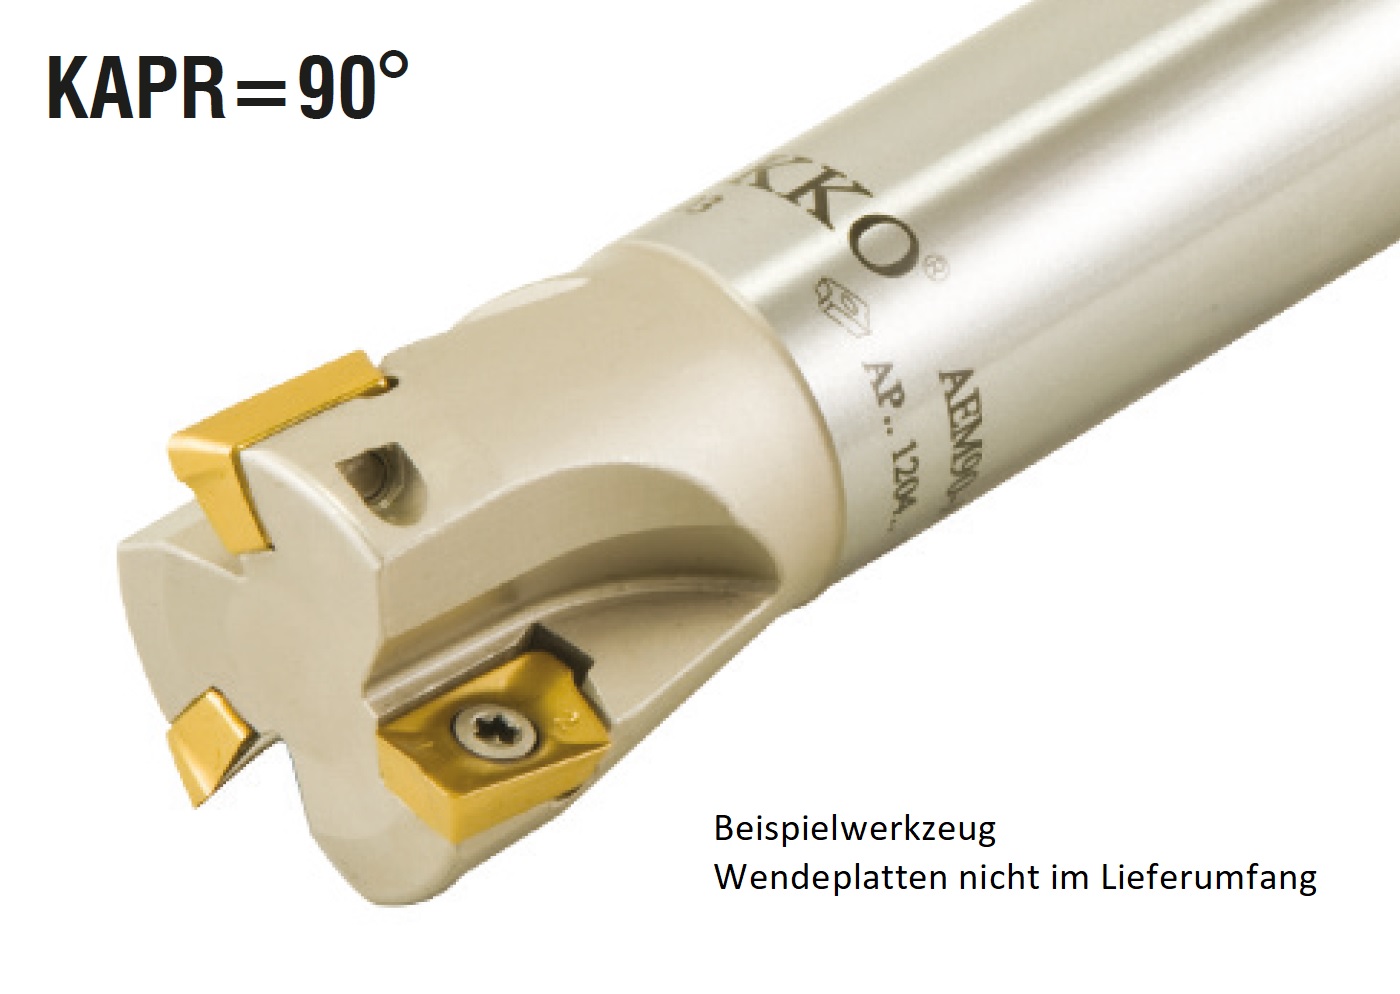 AKKO-Wendeplatten-Schaftfräser ø 17 mm, 90°, kompatibel mit Taegutec AKPT 09T3..
Schaft-ø 16, ohne Innenkühlung, Z=2